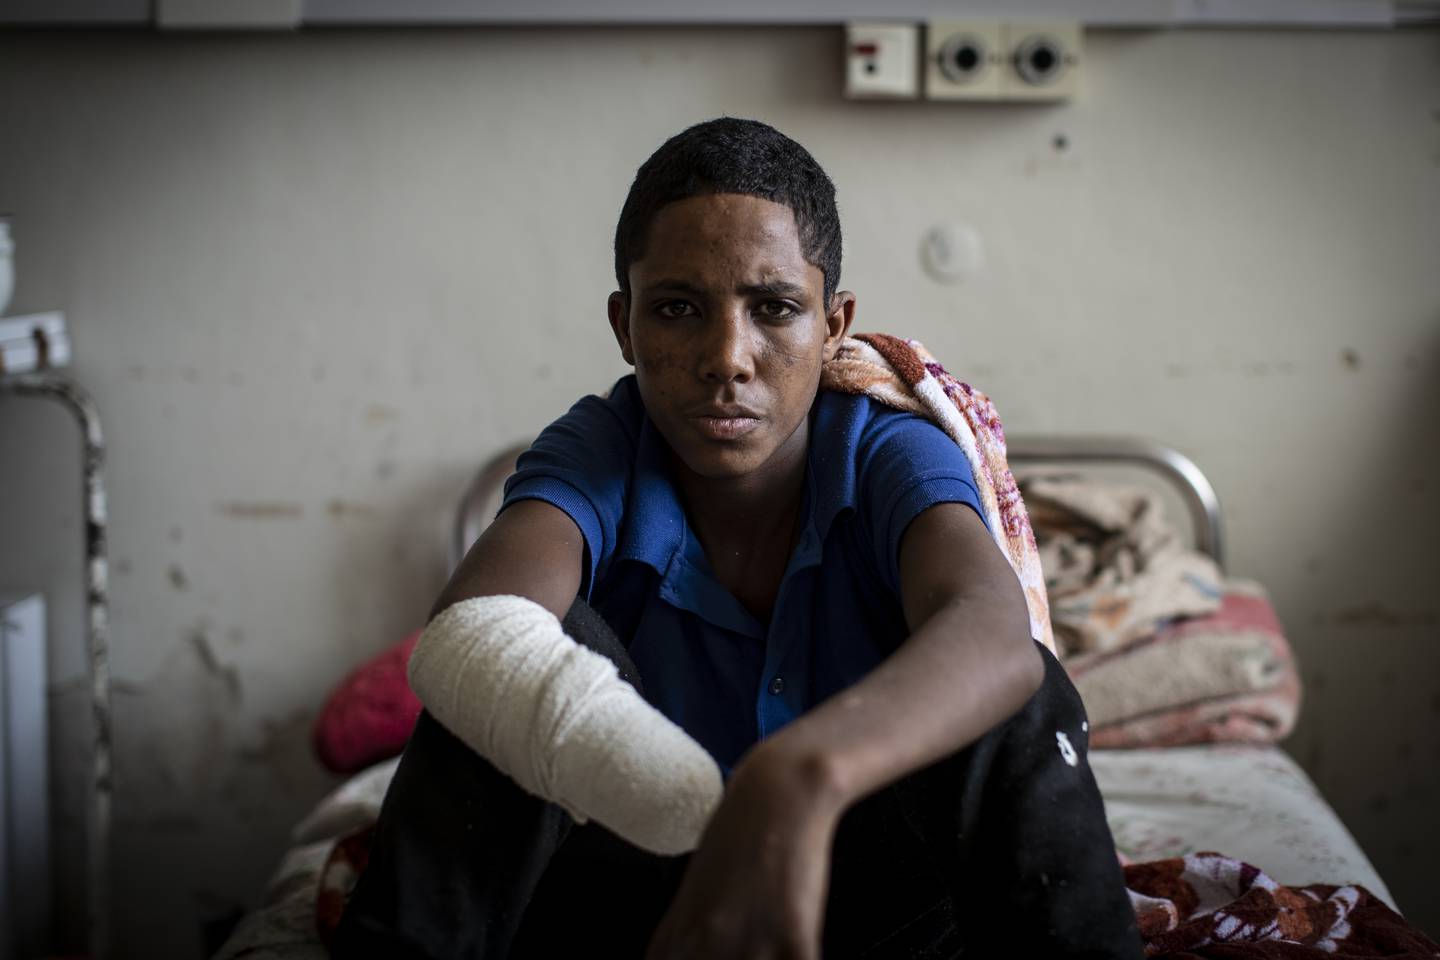 17 år gamle Haftom Gebretsadik mistet hånden i et artilleriangrep fra etiopiske regjeringsstyrker i Tigray i mars. Foto: AP / NTB